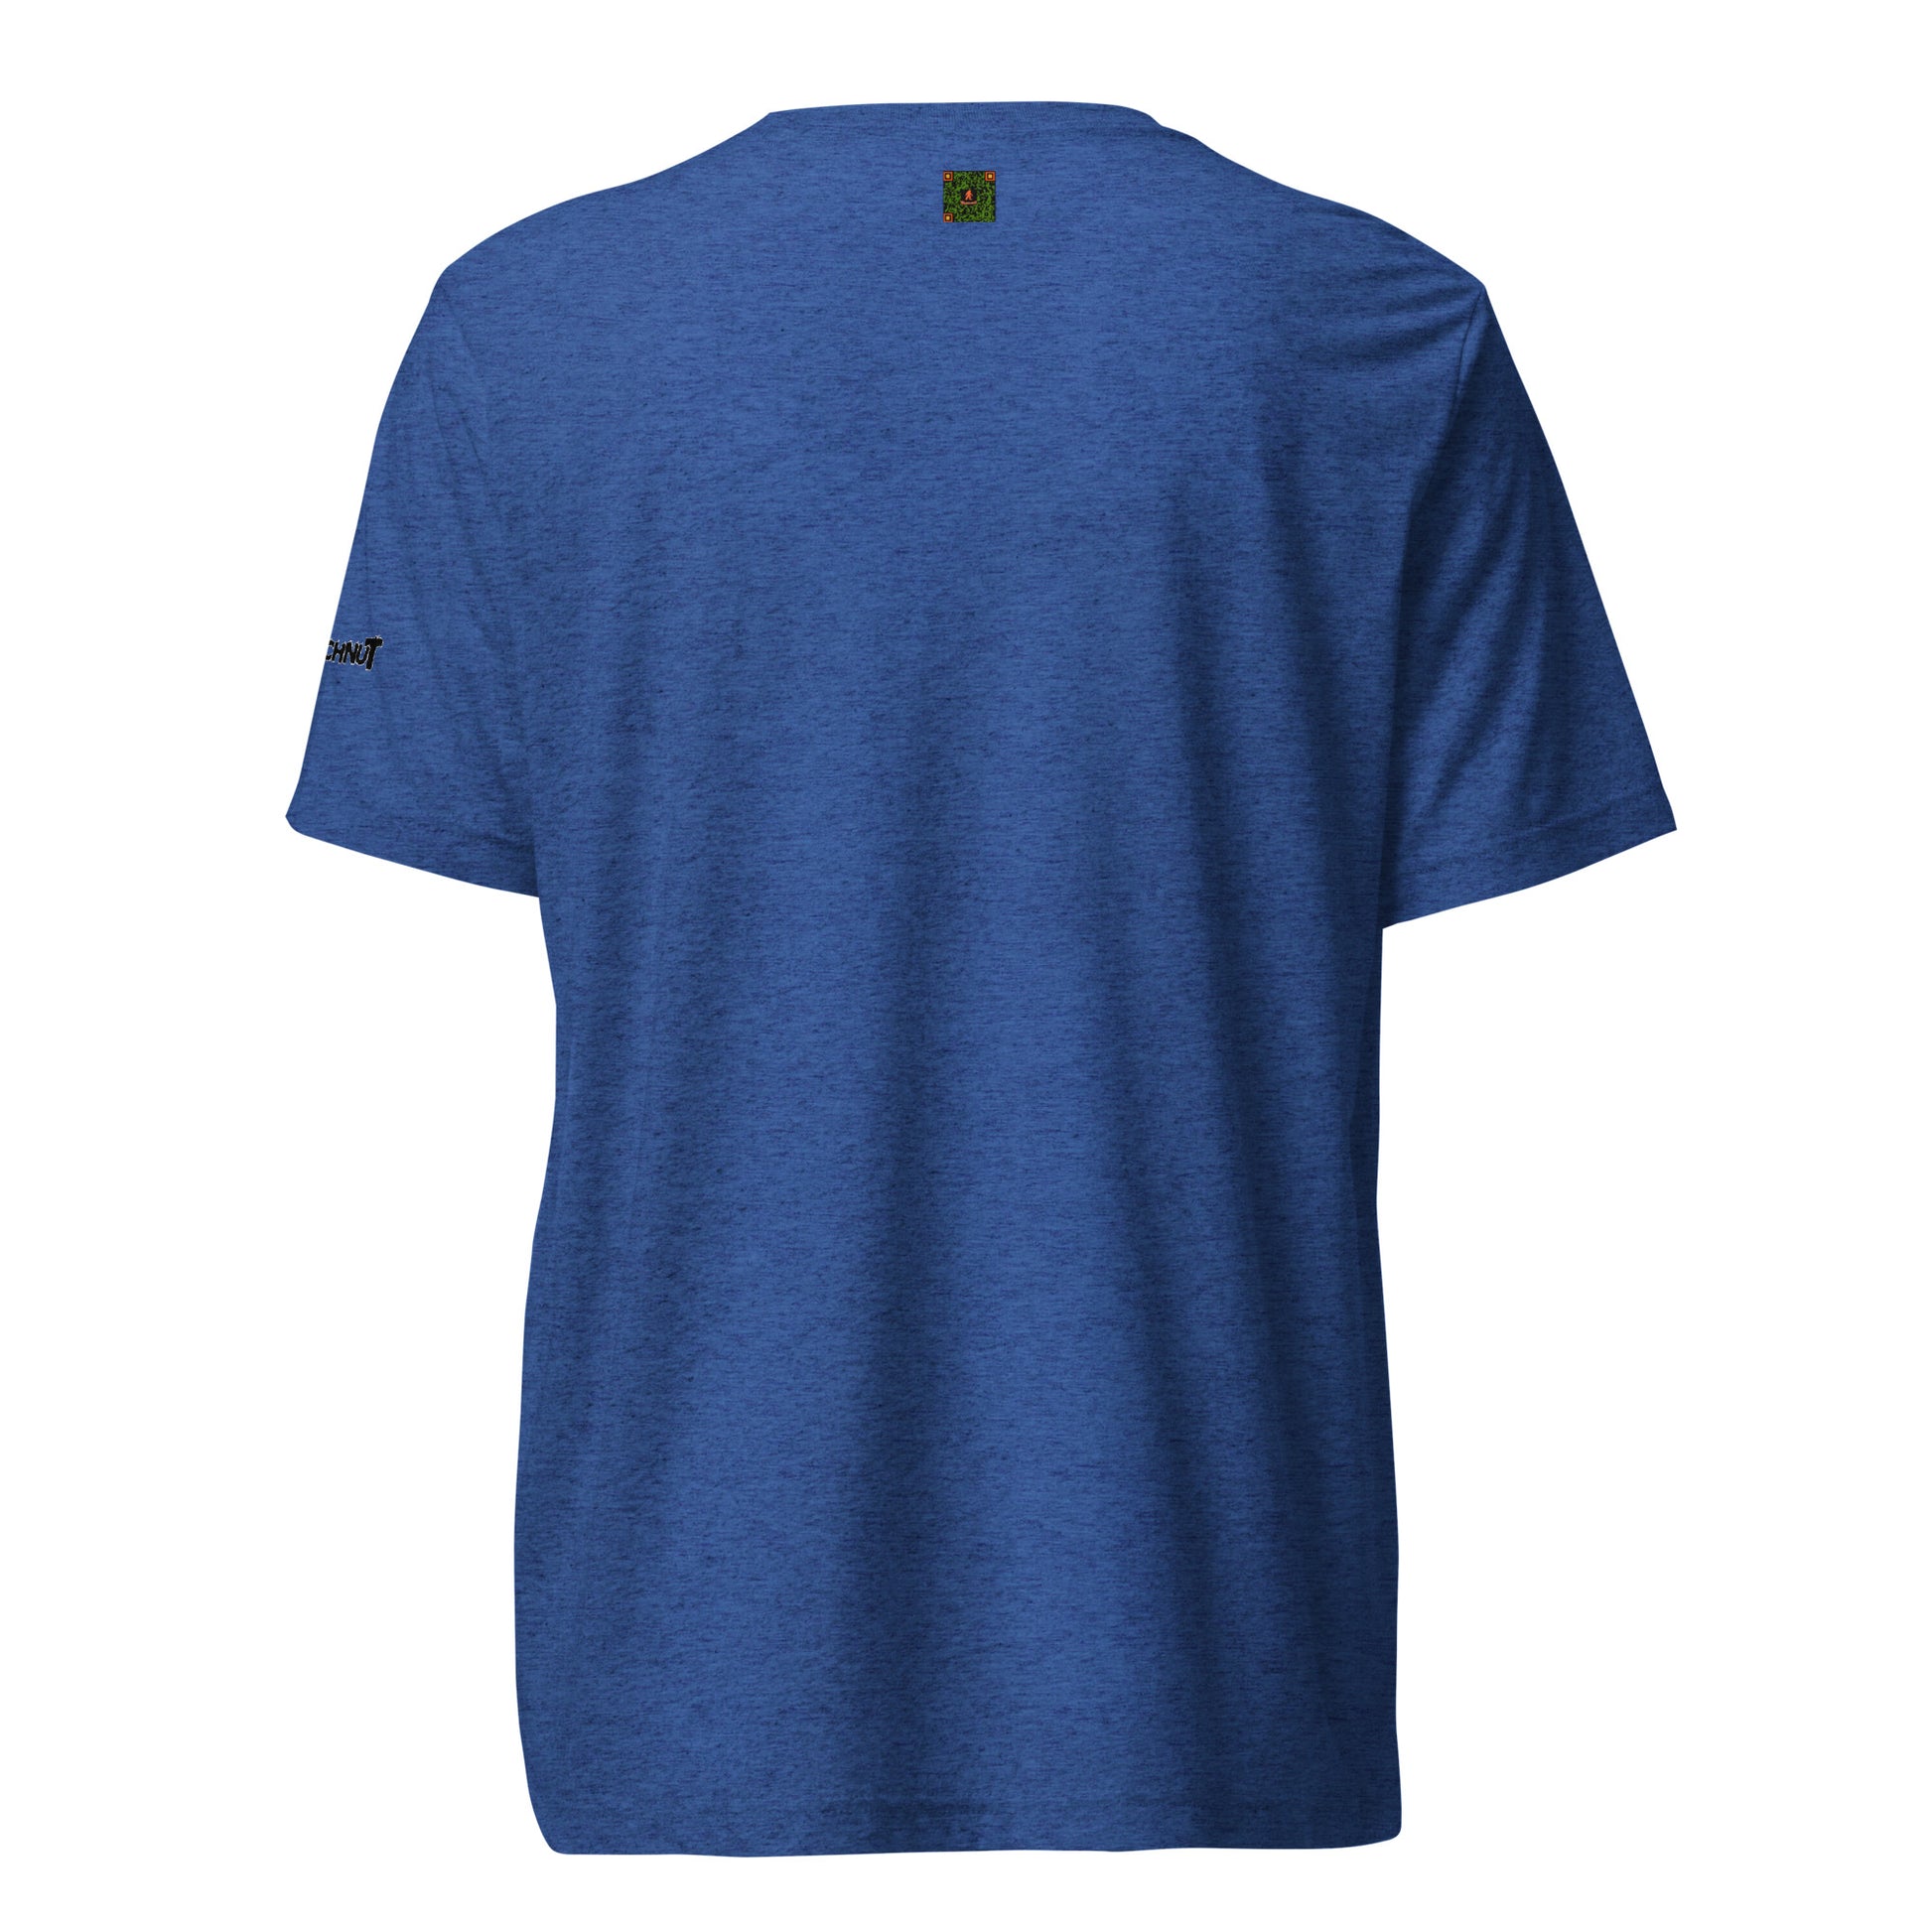 Modal blend open-back short-sleeved T-shirt